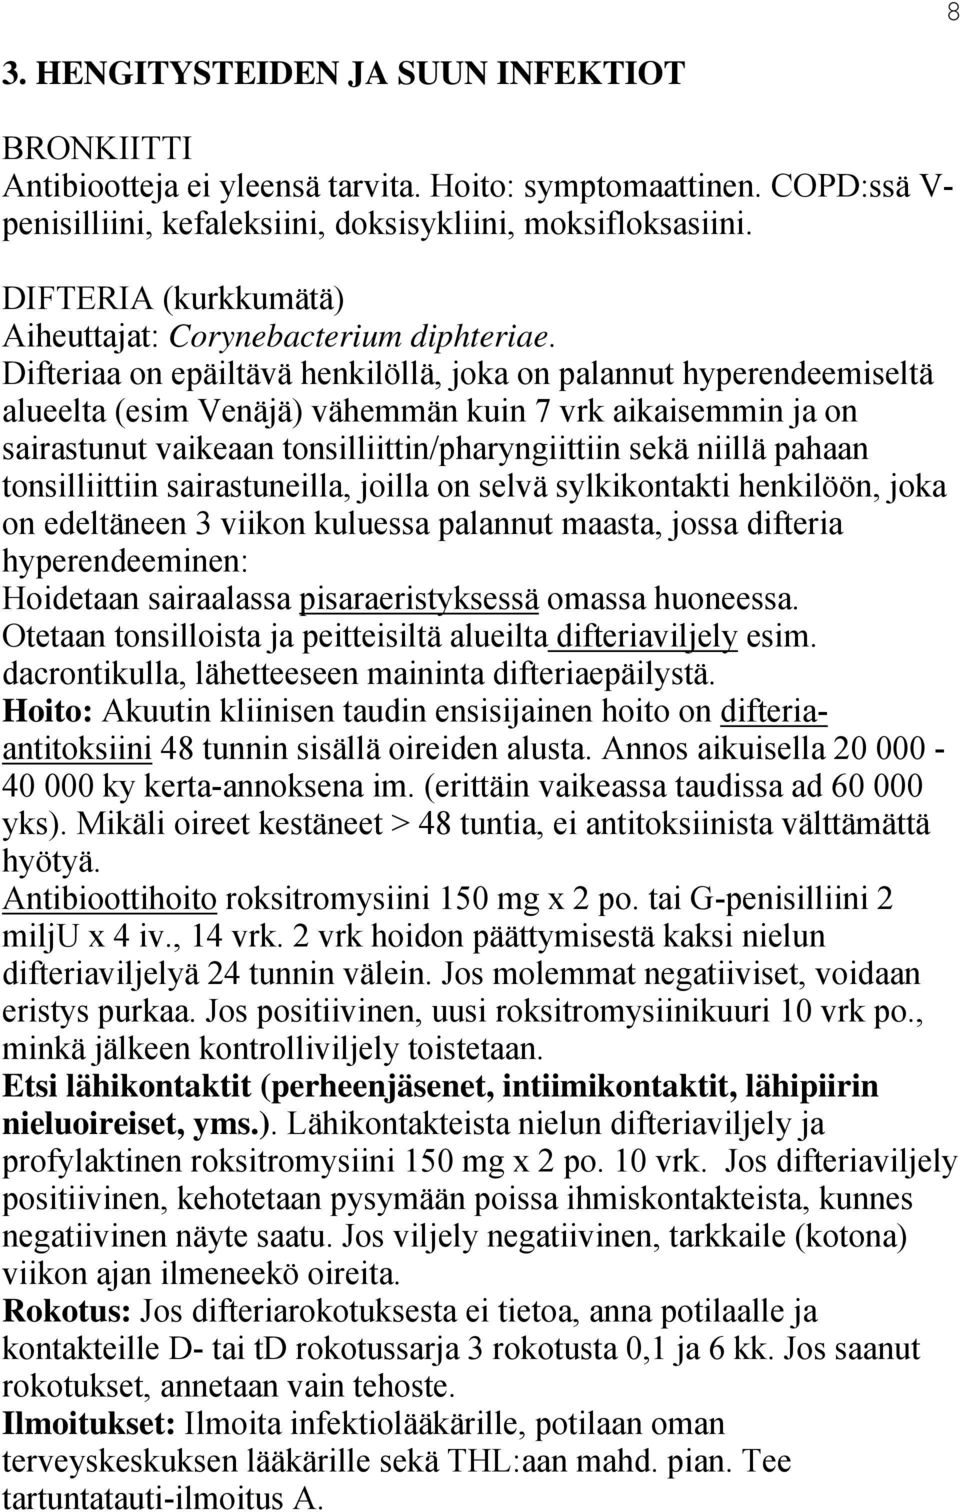 Difteriaa on epäiltävä henkilöllä, joka on palannut hyperendeemiseltä alueelta (esim Venäjä) vähemmän kuin 7 vrk aikaisemmin ja on sairastunut vaikeaan tonsilliittin/pharyngiittiin sekä niillä pahaan